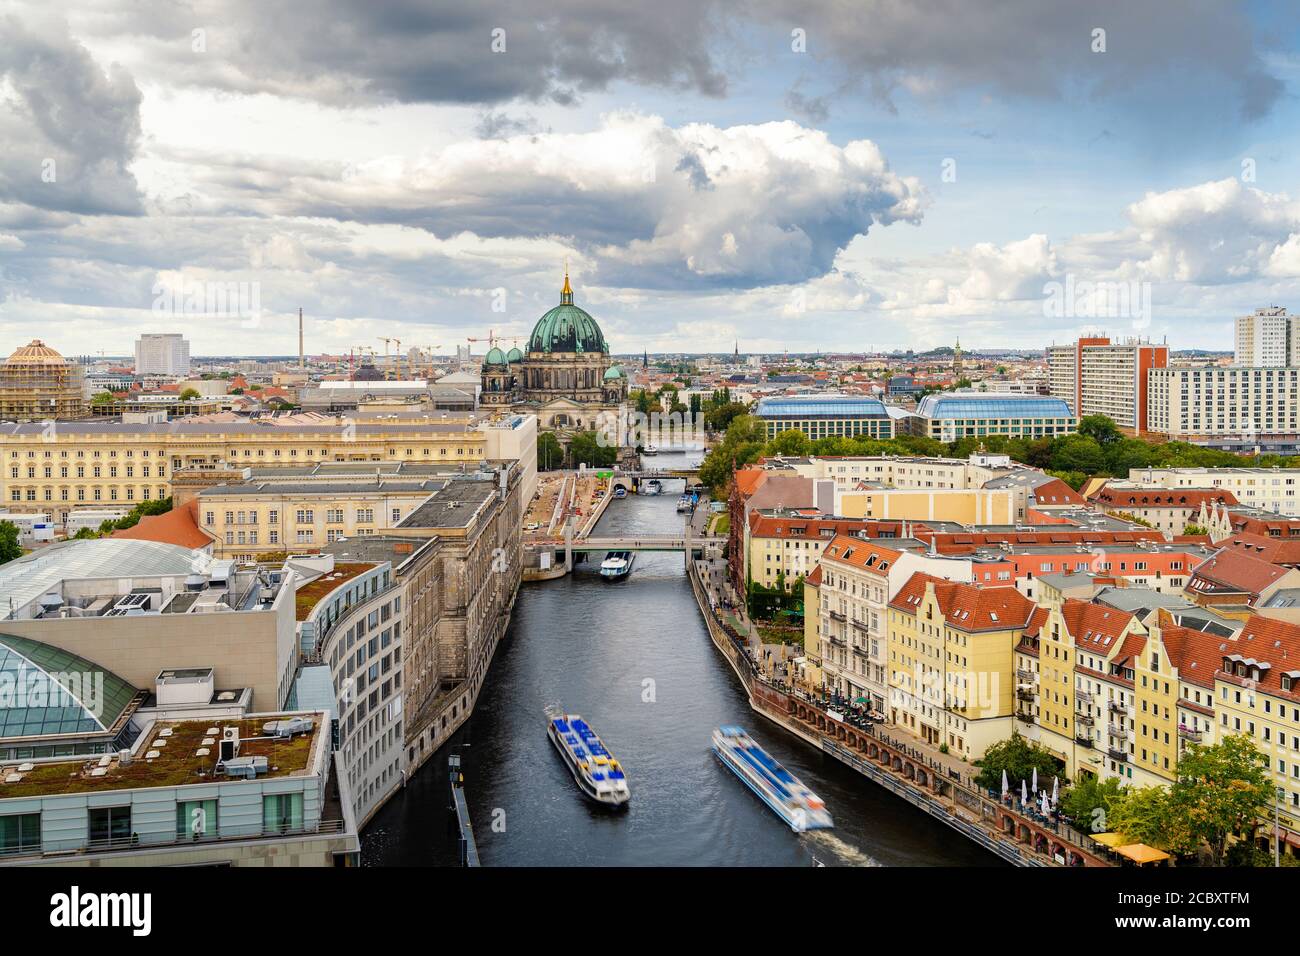 Panoramablick auf Berlin, Deutschland, zeigt das historische Wahrzeichen des Berliner Doms und Ausflugsboote auf der Spree. Stockfoto